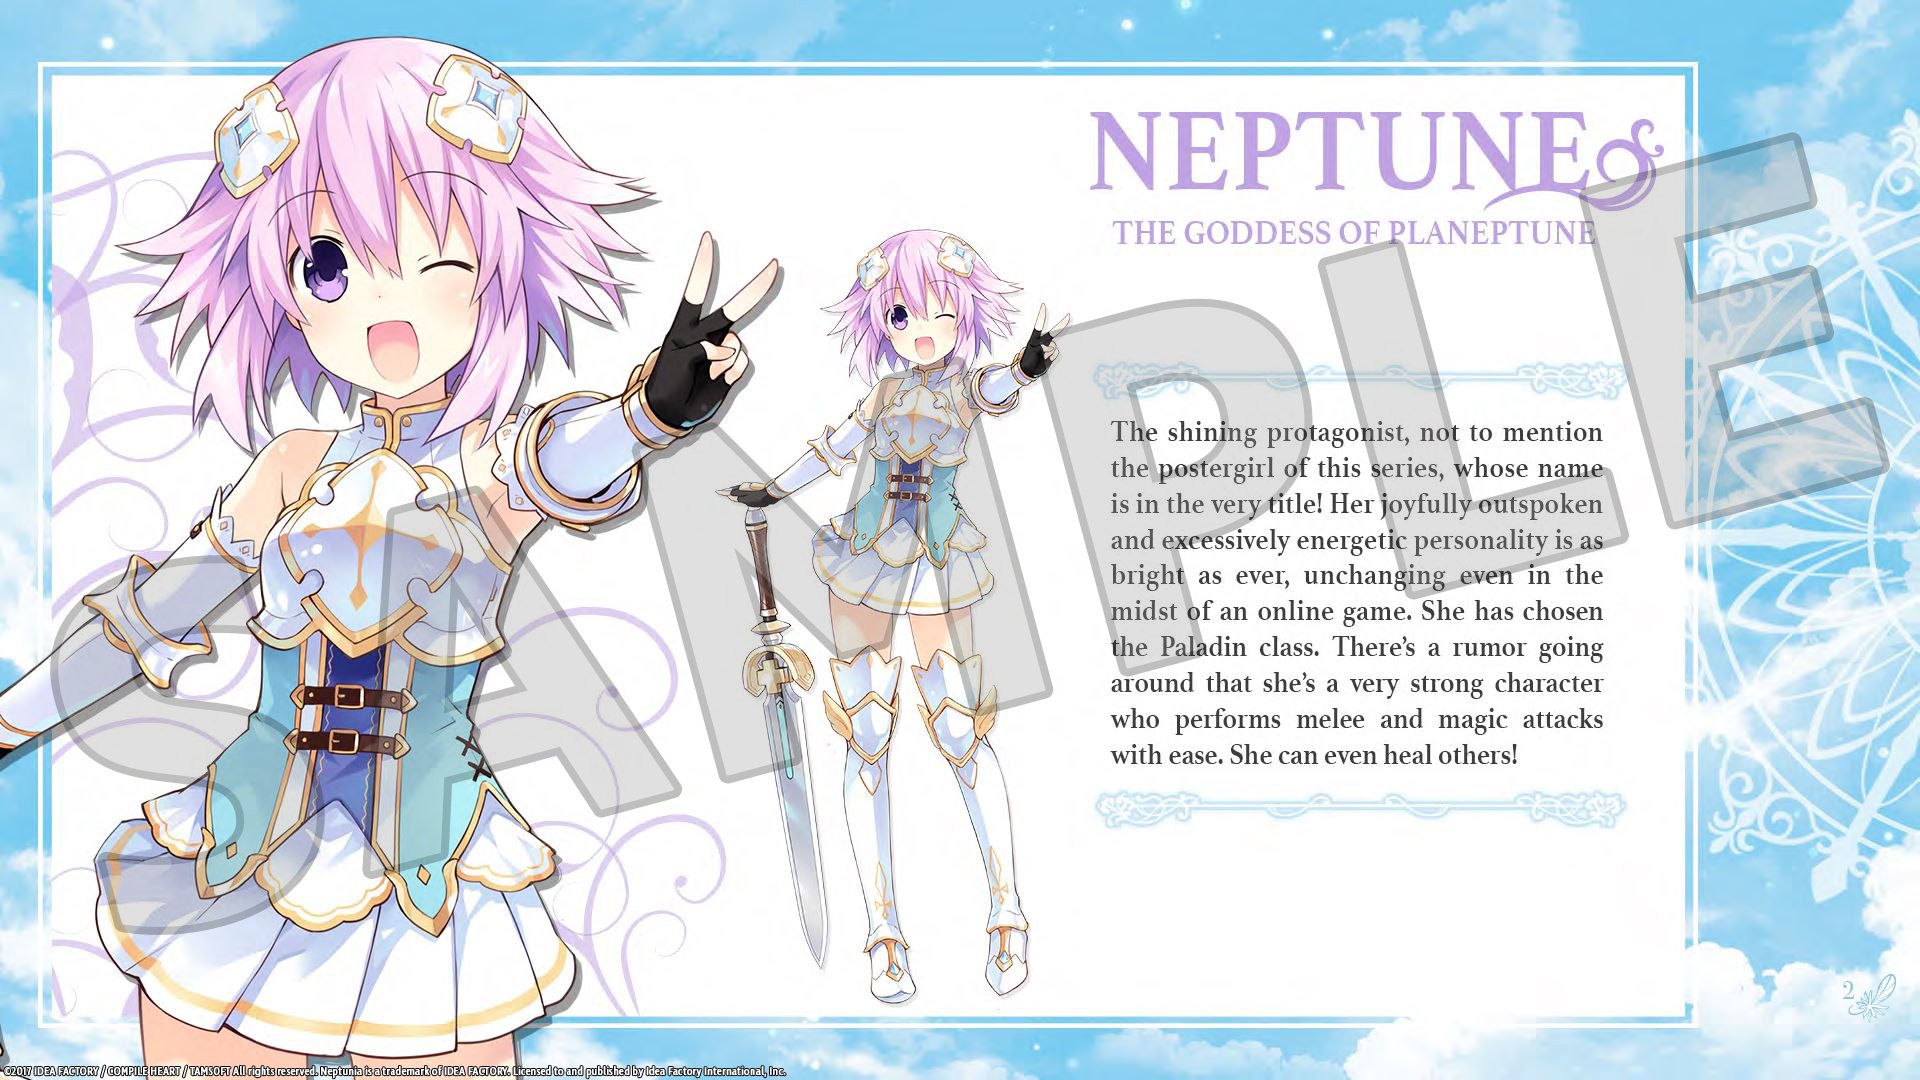 Cyberdimension Neptunia: 4 Goddesses Online - Deluxe Pack DLC Steam CD Key $1.69